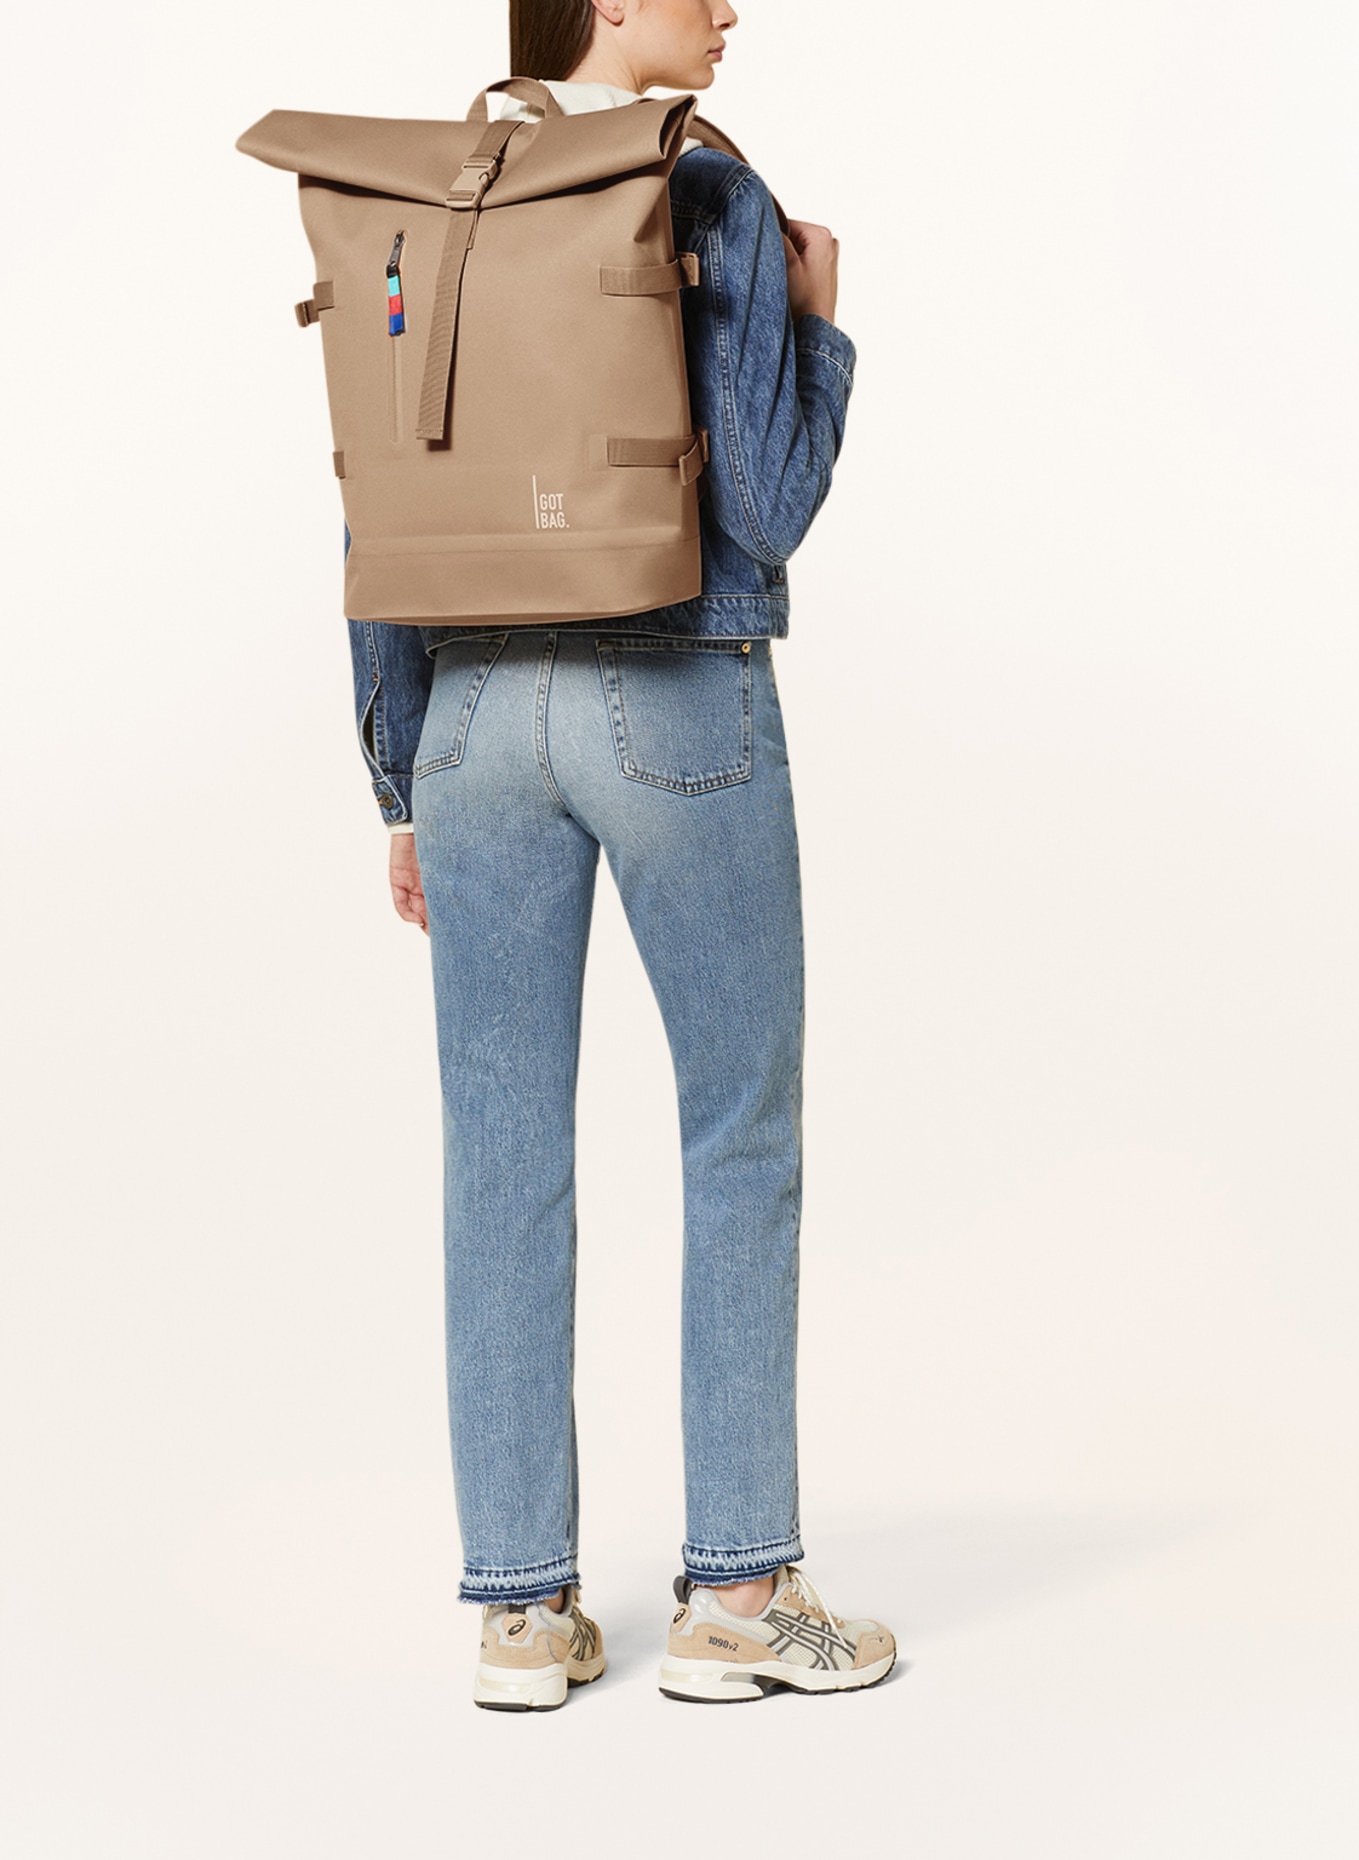 GOT BAG Backpack, Color: CAMEL (Image 4)